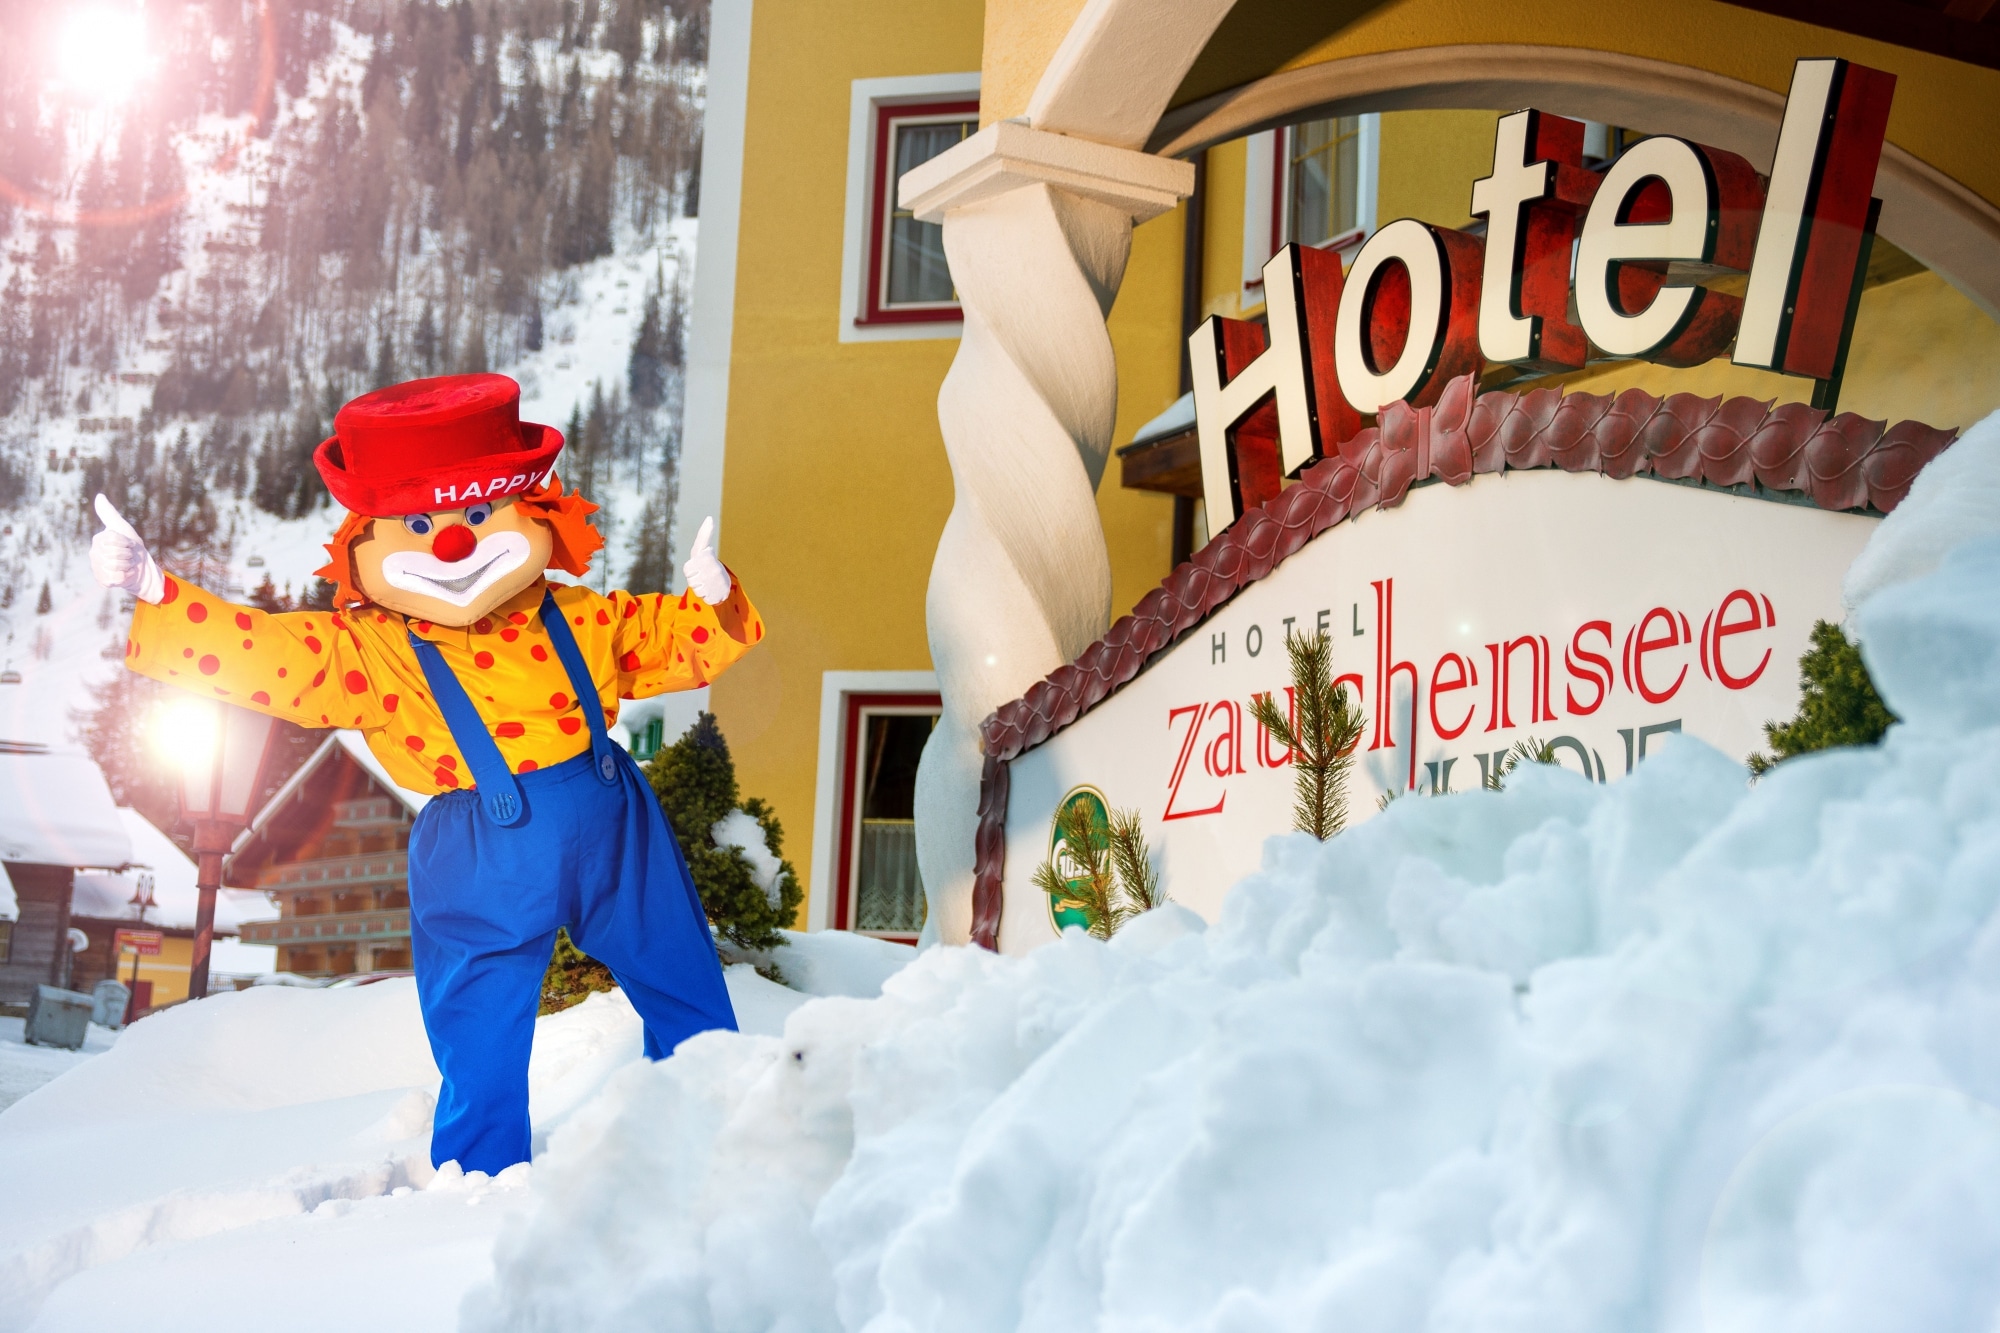 Maskottchen "Happy" vor dem verschneiten Hotel Zauchenseehof